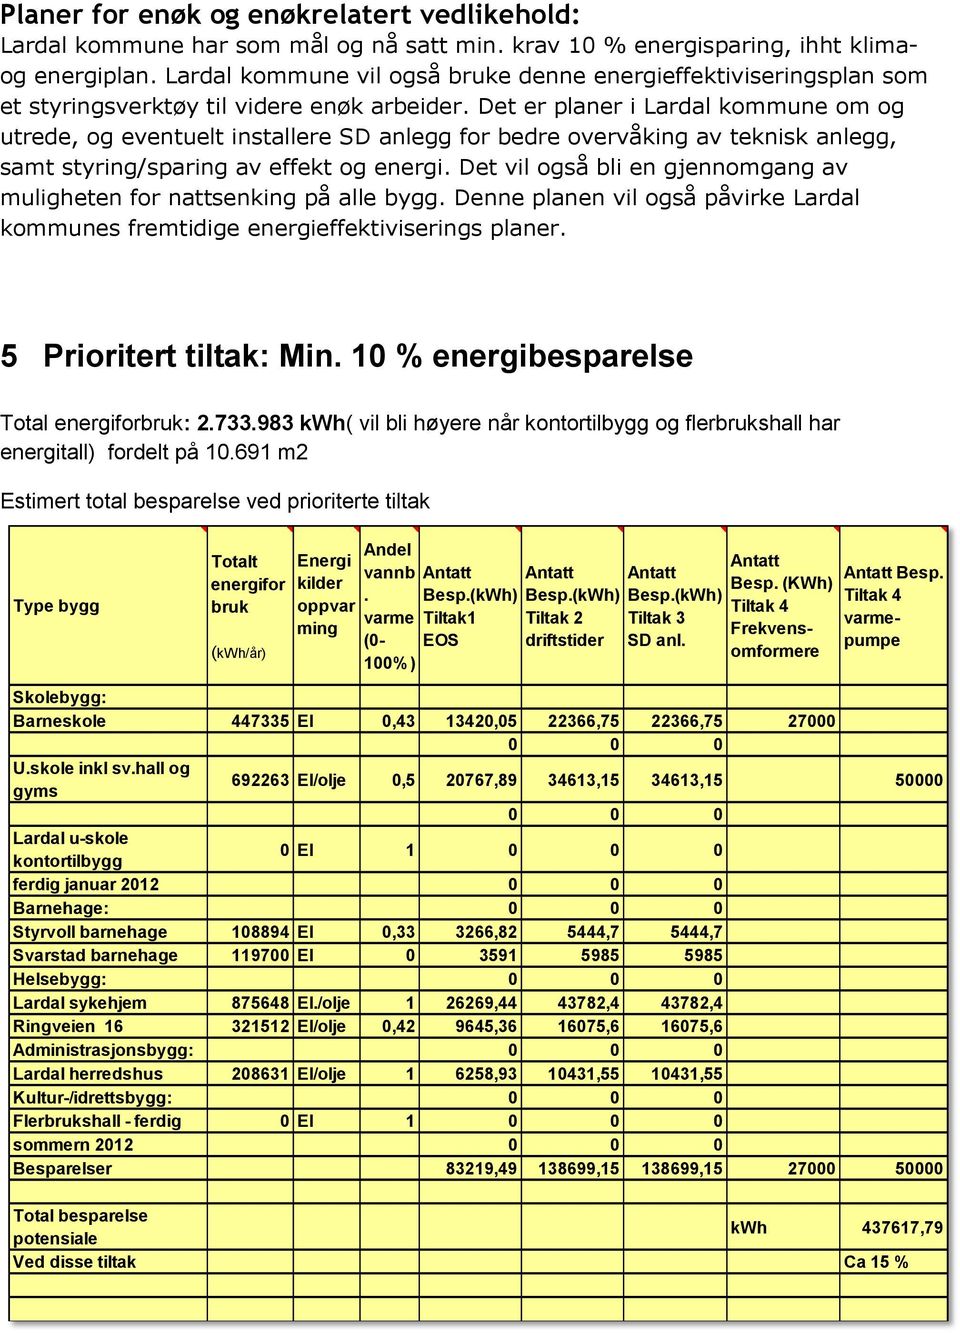 Det er planer i Lardal kommune om og utrede, og eventuelt installere SD anlegg for bedre overvåking av teknisk anlegg, samt styring/sparing av effekt og energi.